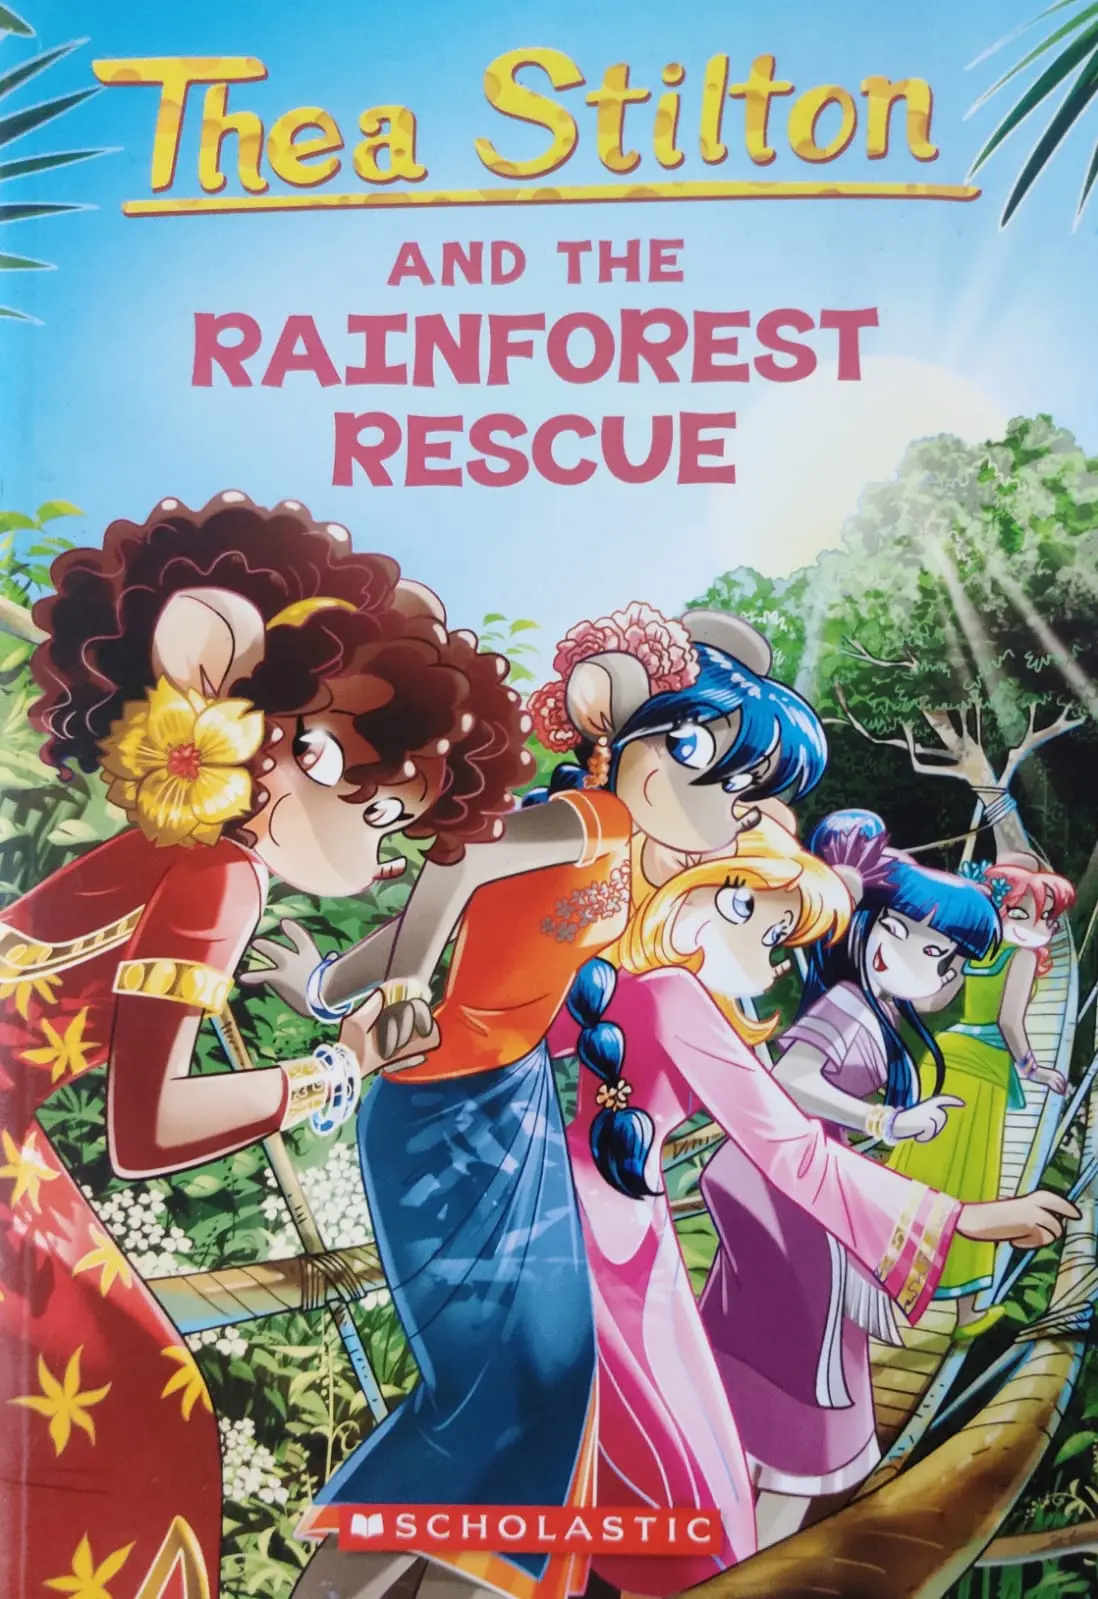 Rain Forest Rescue